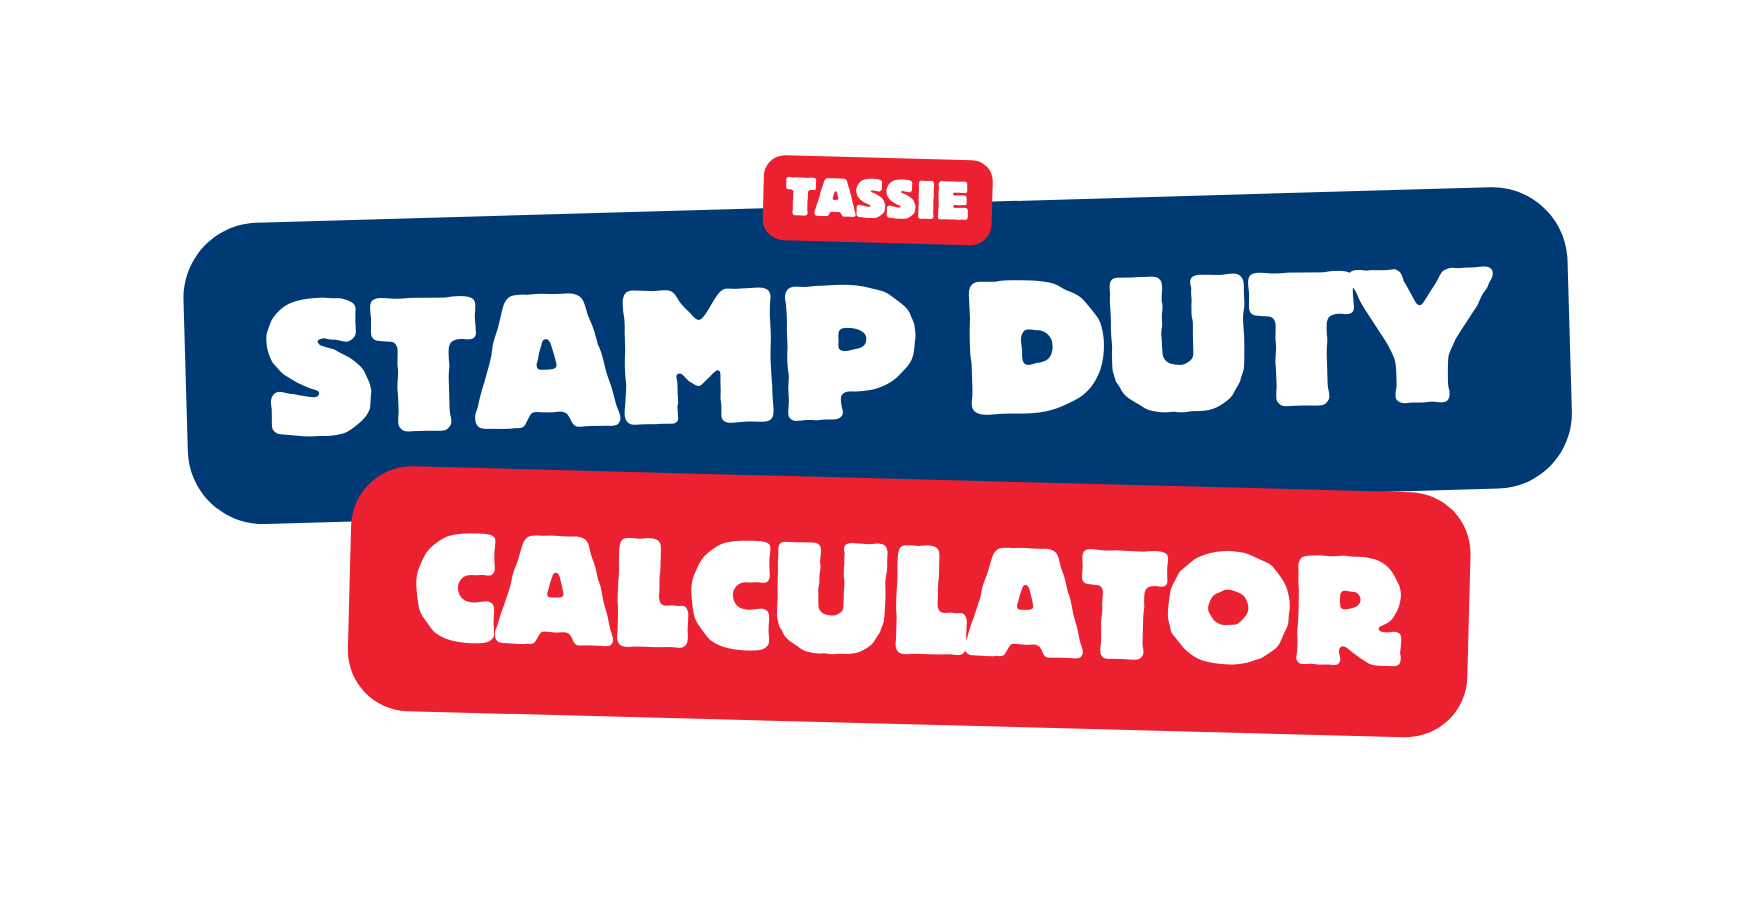 Tassie Stamp Duty Calculator